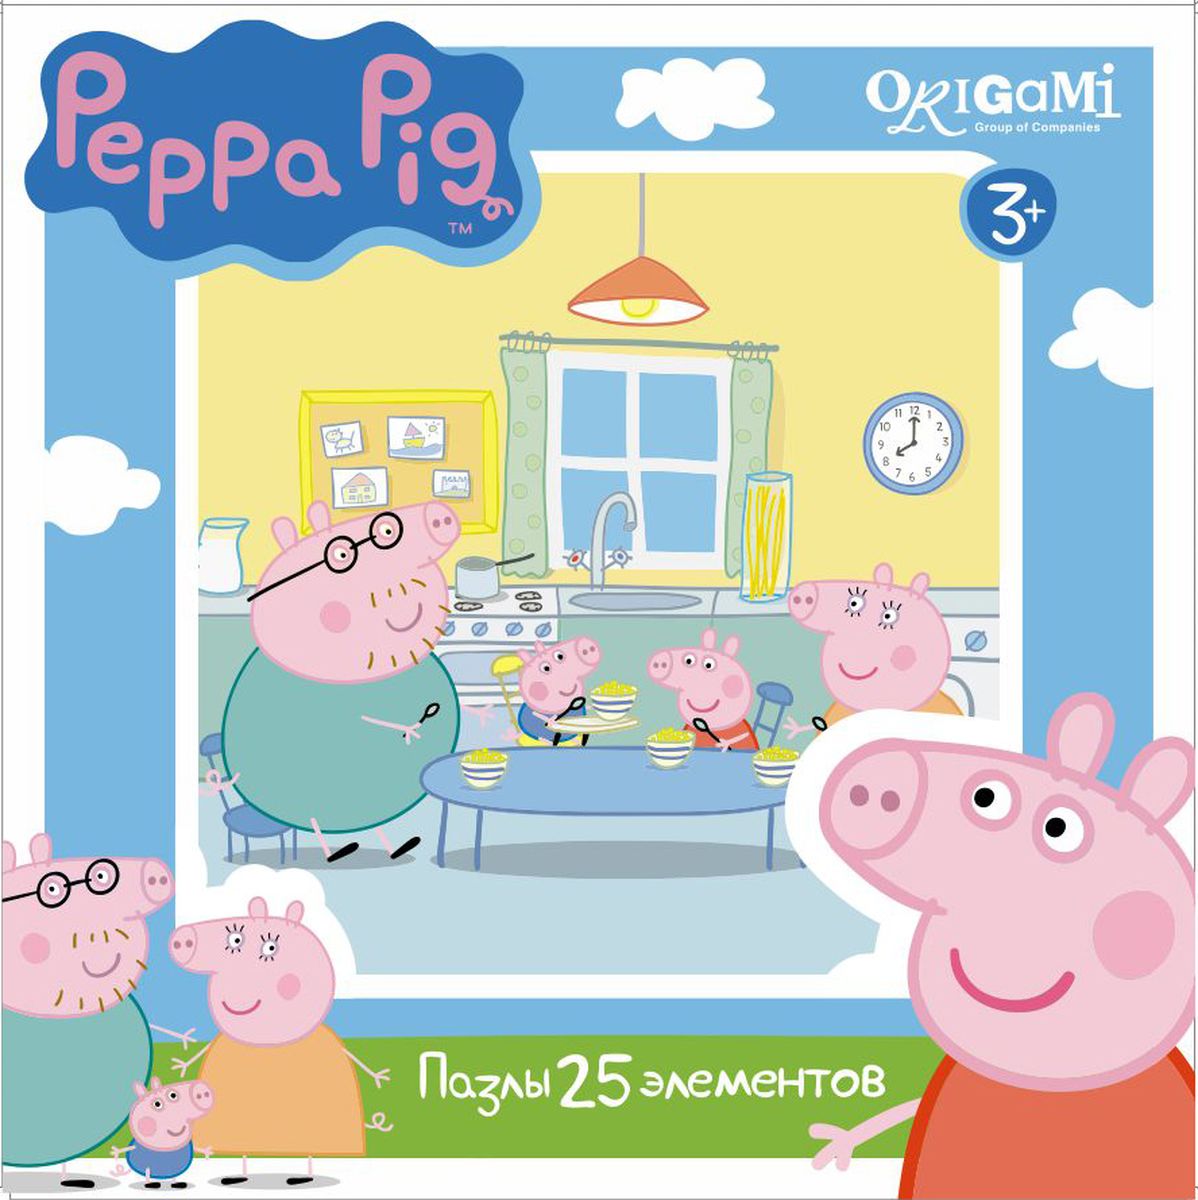 Оригами Пазл для малышей Peppa Pig 01581